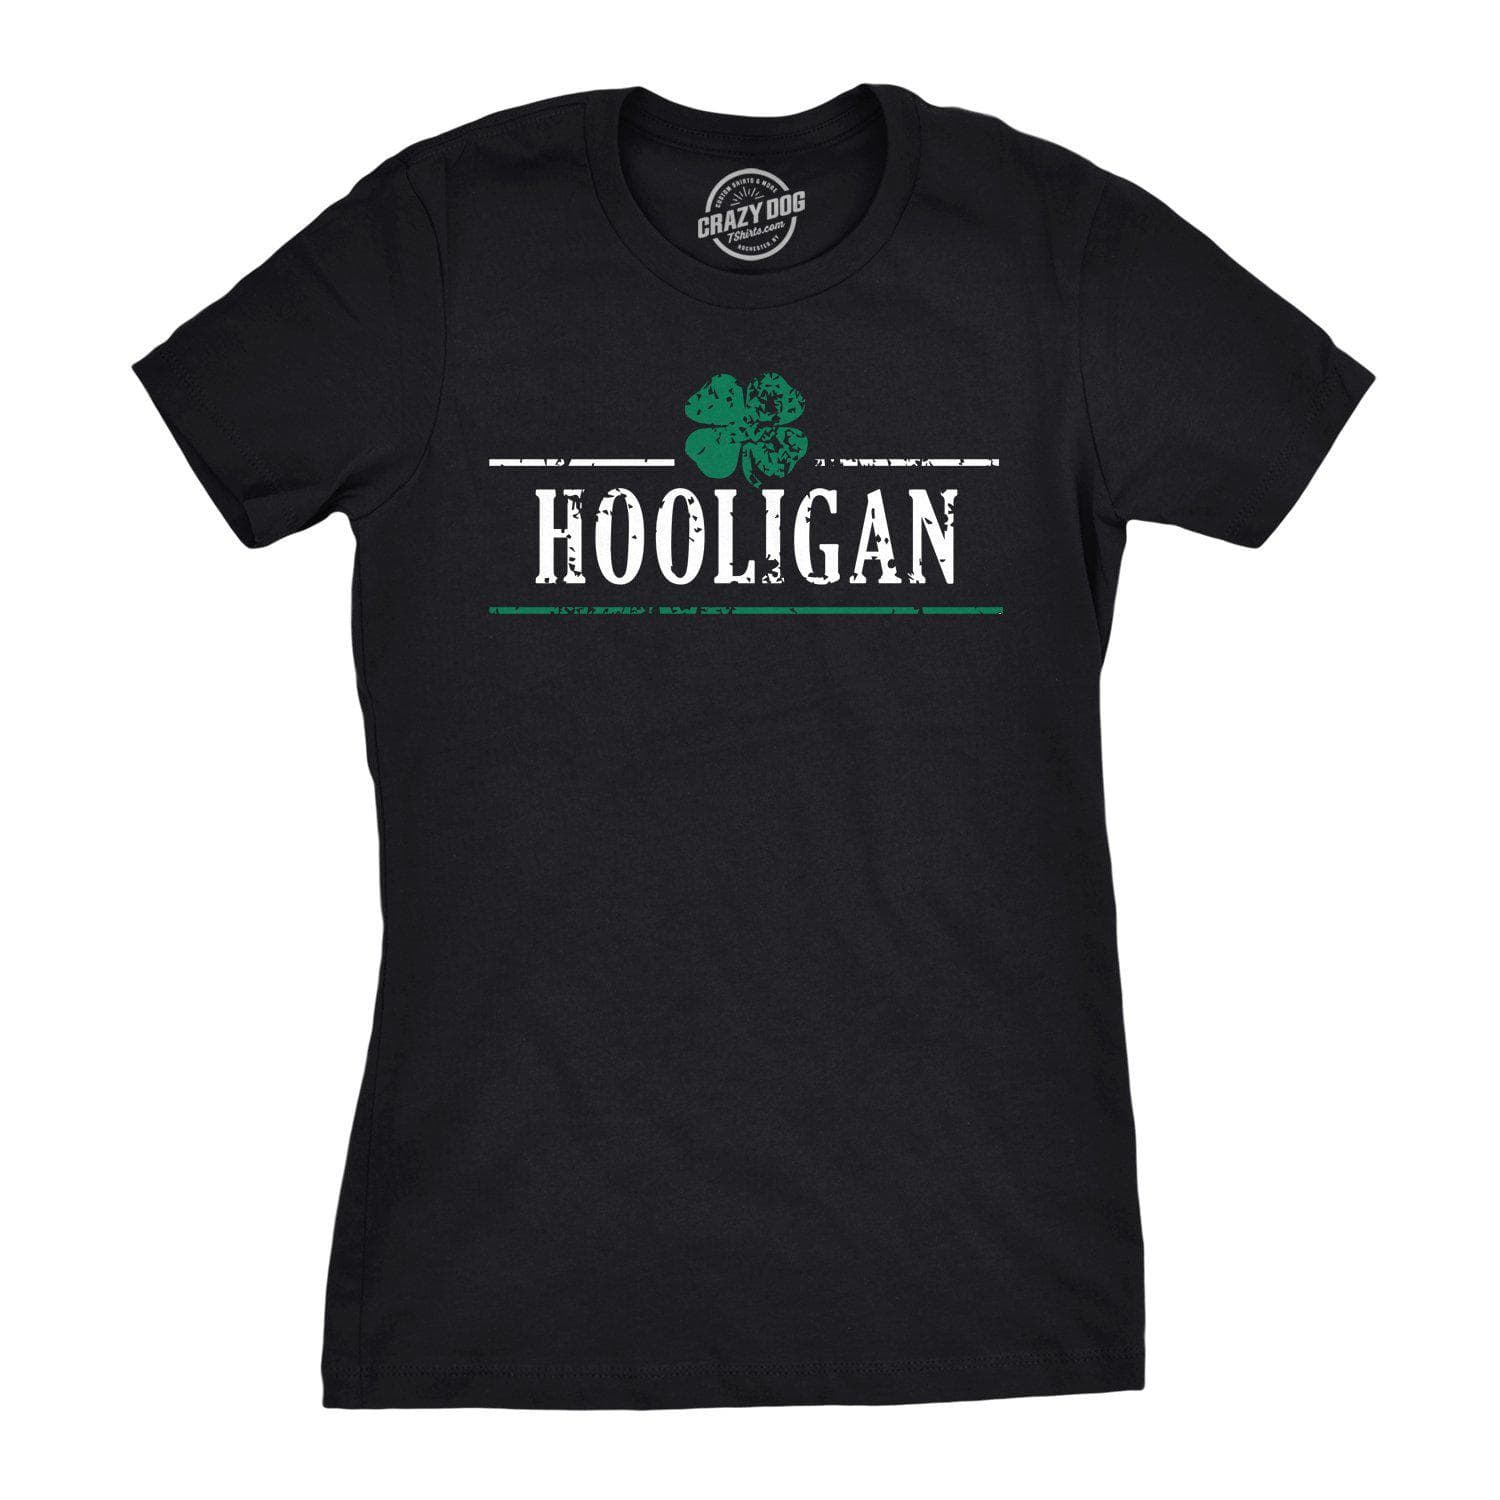 Irish Yoga Women's T Shirt - Crazy Dog T-Shirts